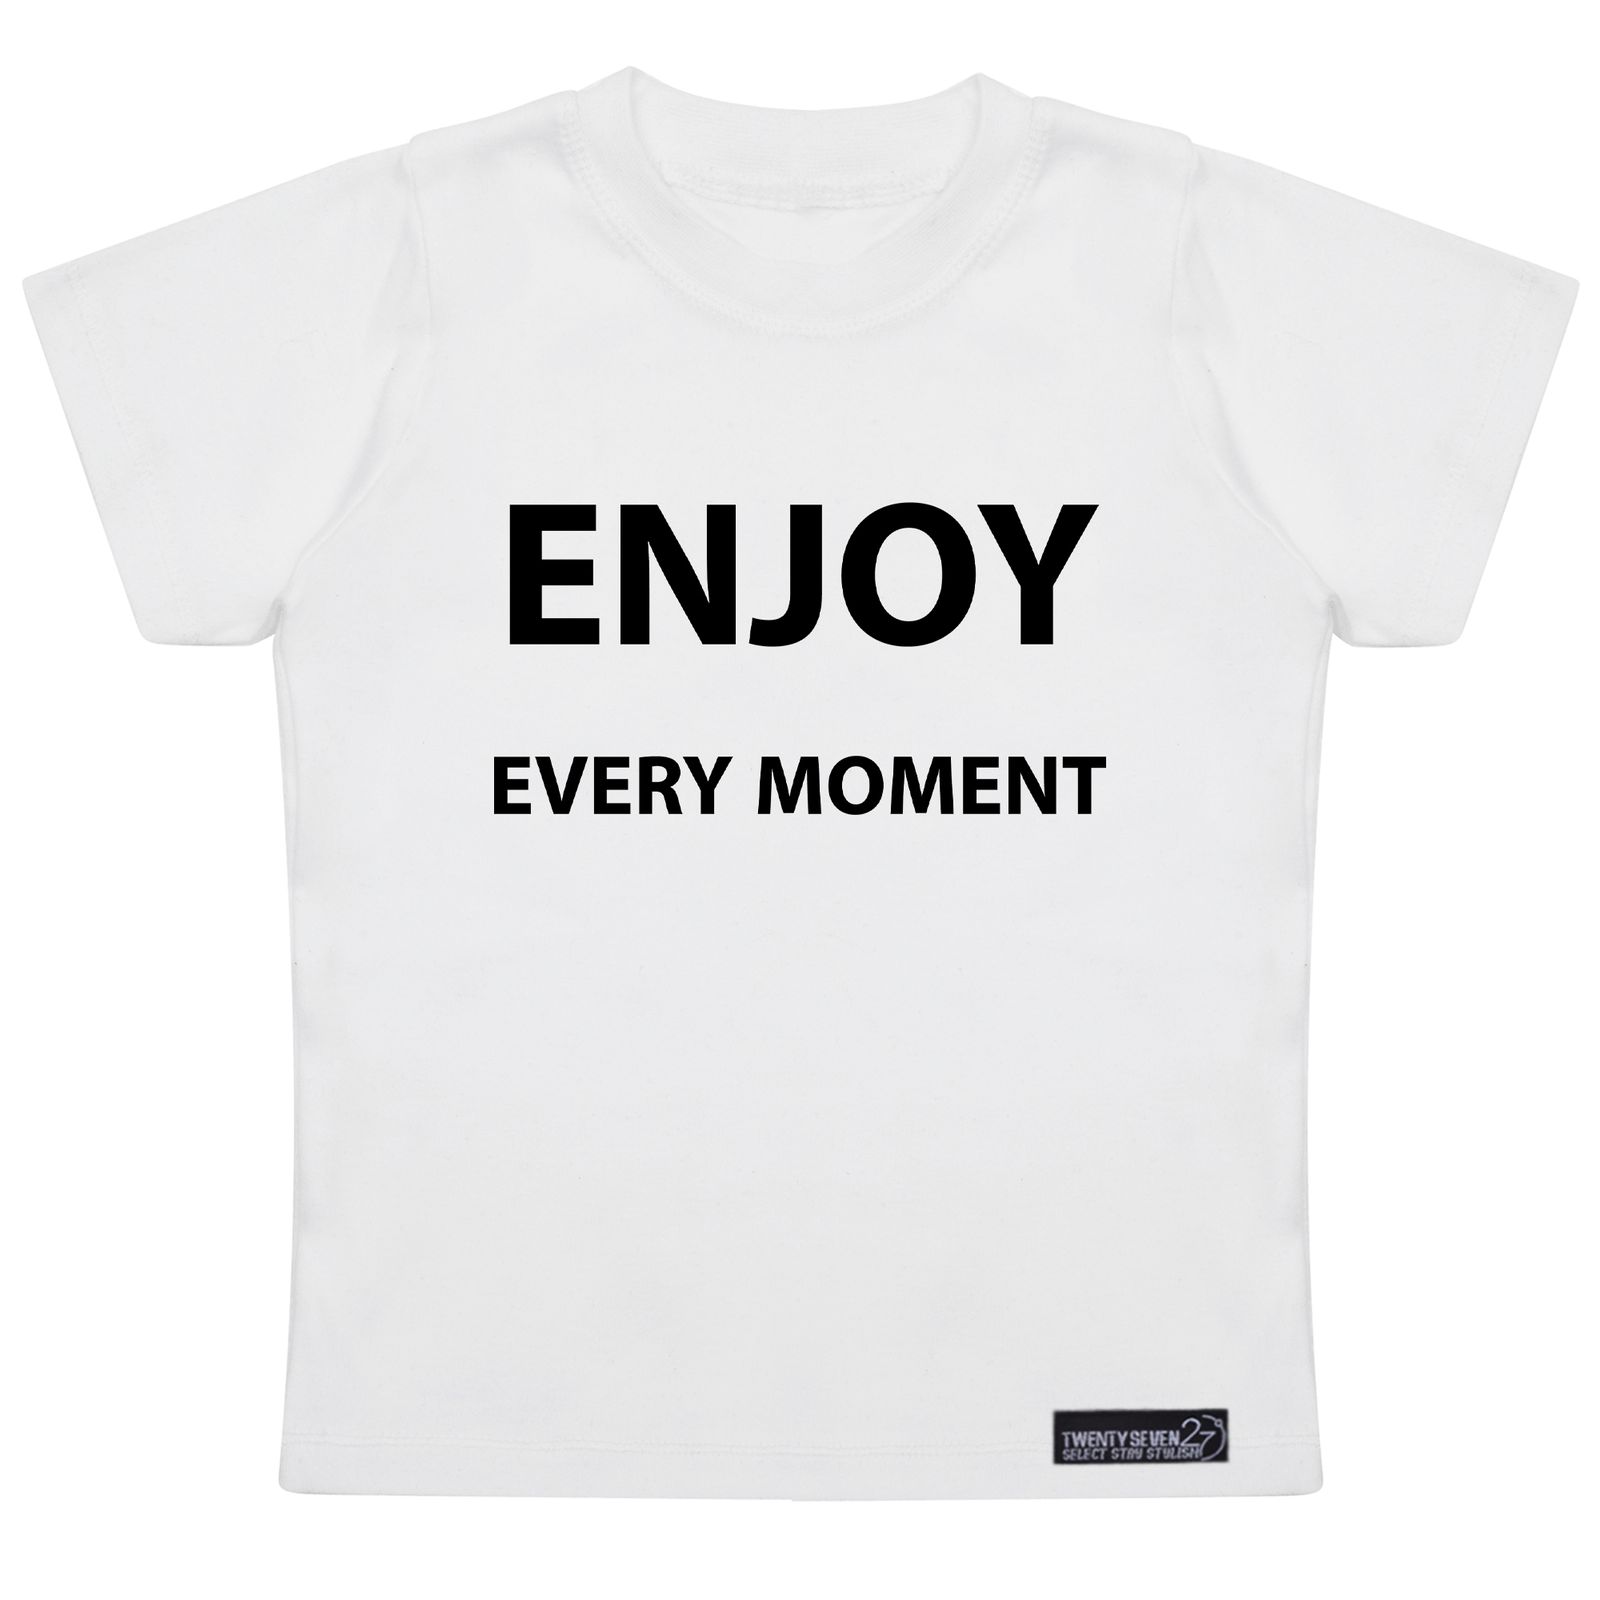 تی شرت آستین کوتاه پسرانه 27 مدل Enjoy Every Moment کد MH974 -  - 1